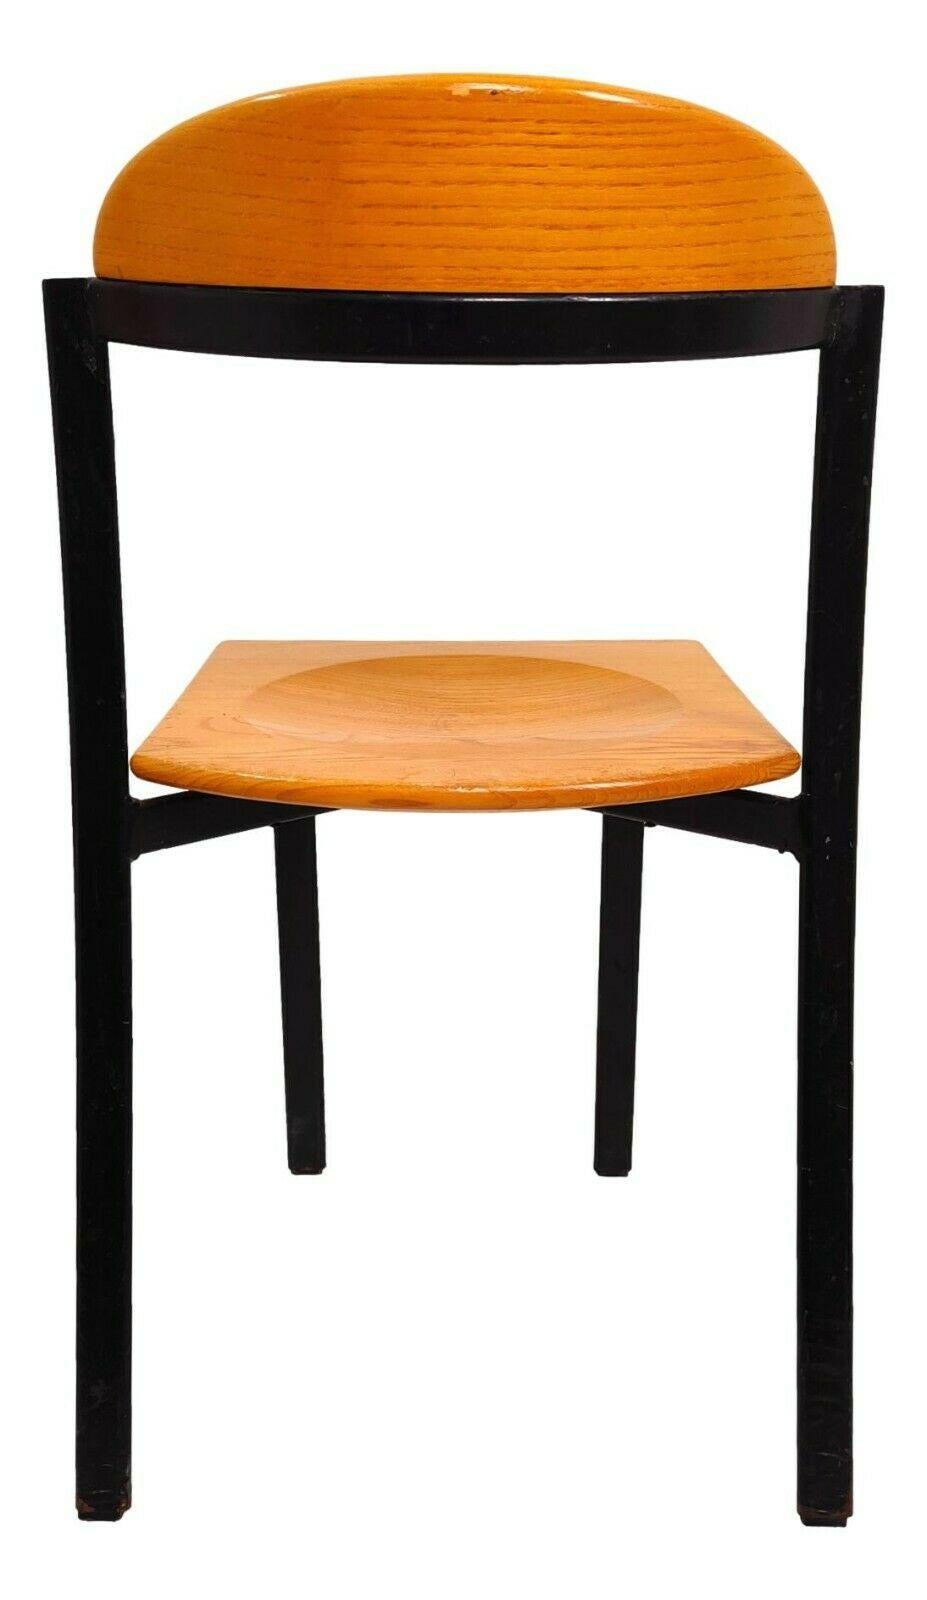 Satz von vier Original-Design-Stühlen aus den 70er Jahren, auf einer schwarz lackierten Metallstruktur, Sitz und Rückenlehne aus Holz gefertigt

Sie messen 78 cm in der Höhe, 46 cm in der Breite, 40 cm in der Tiefe und 46,5 cm in der Höhe des